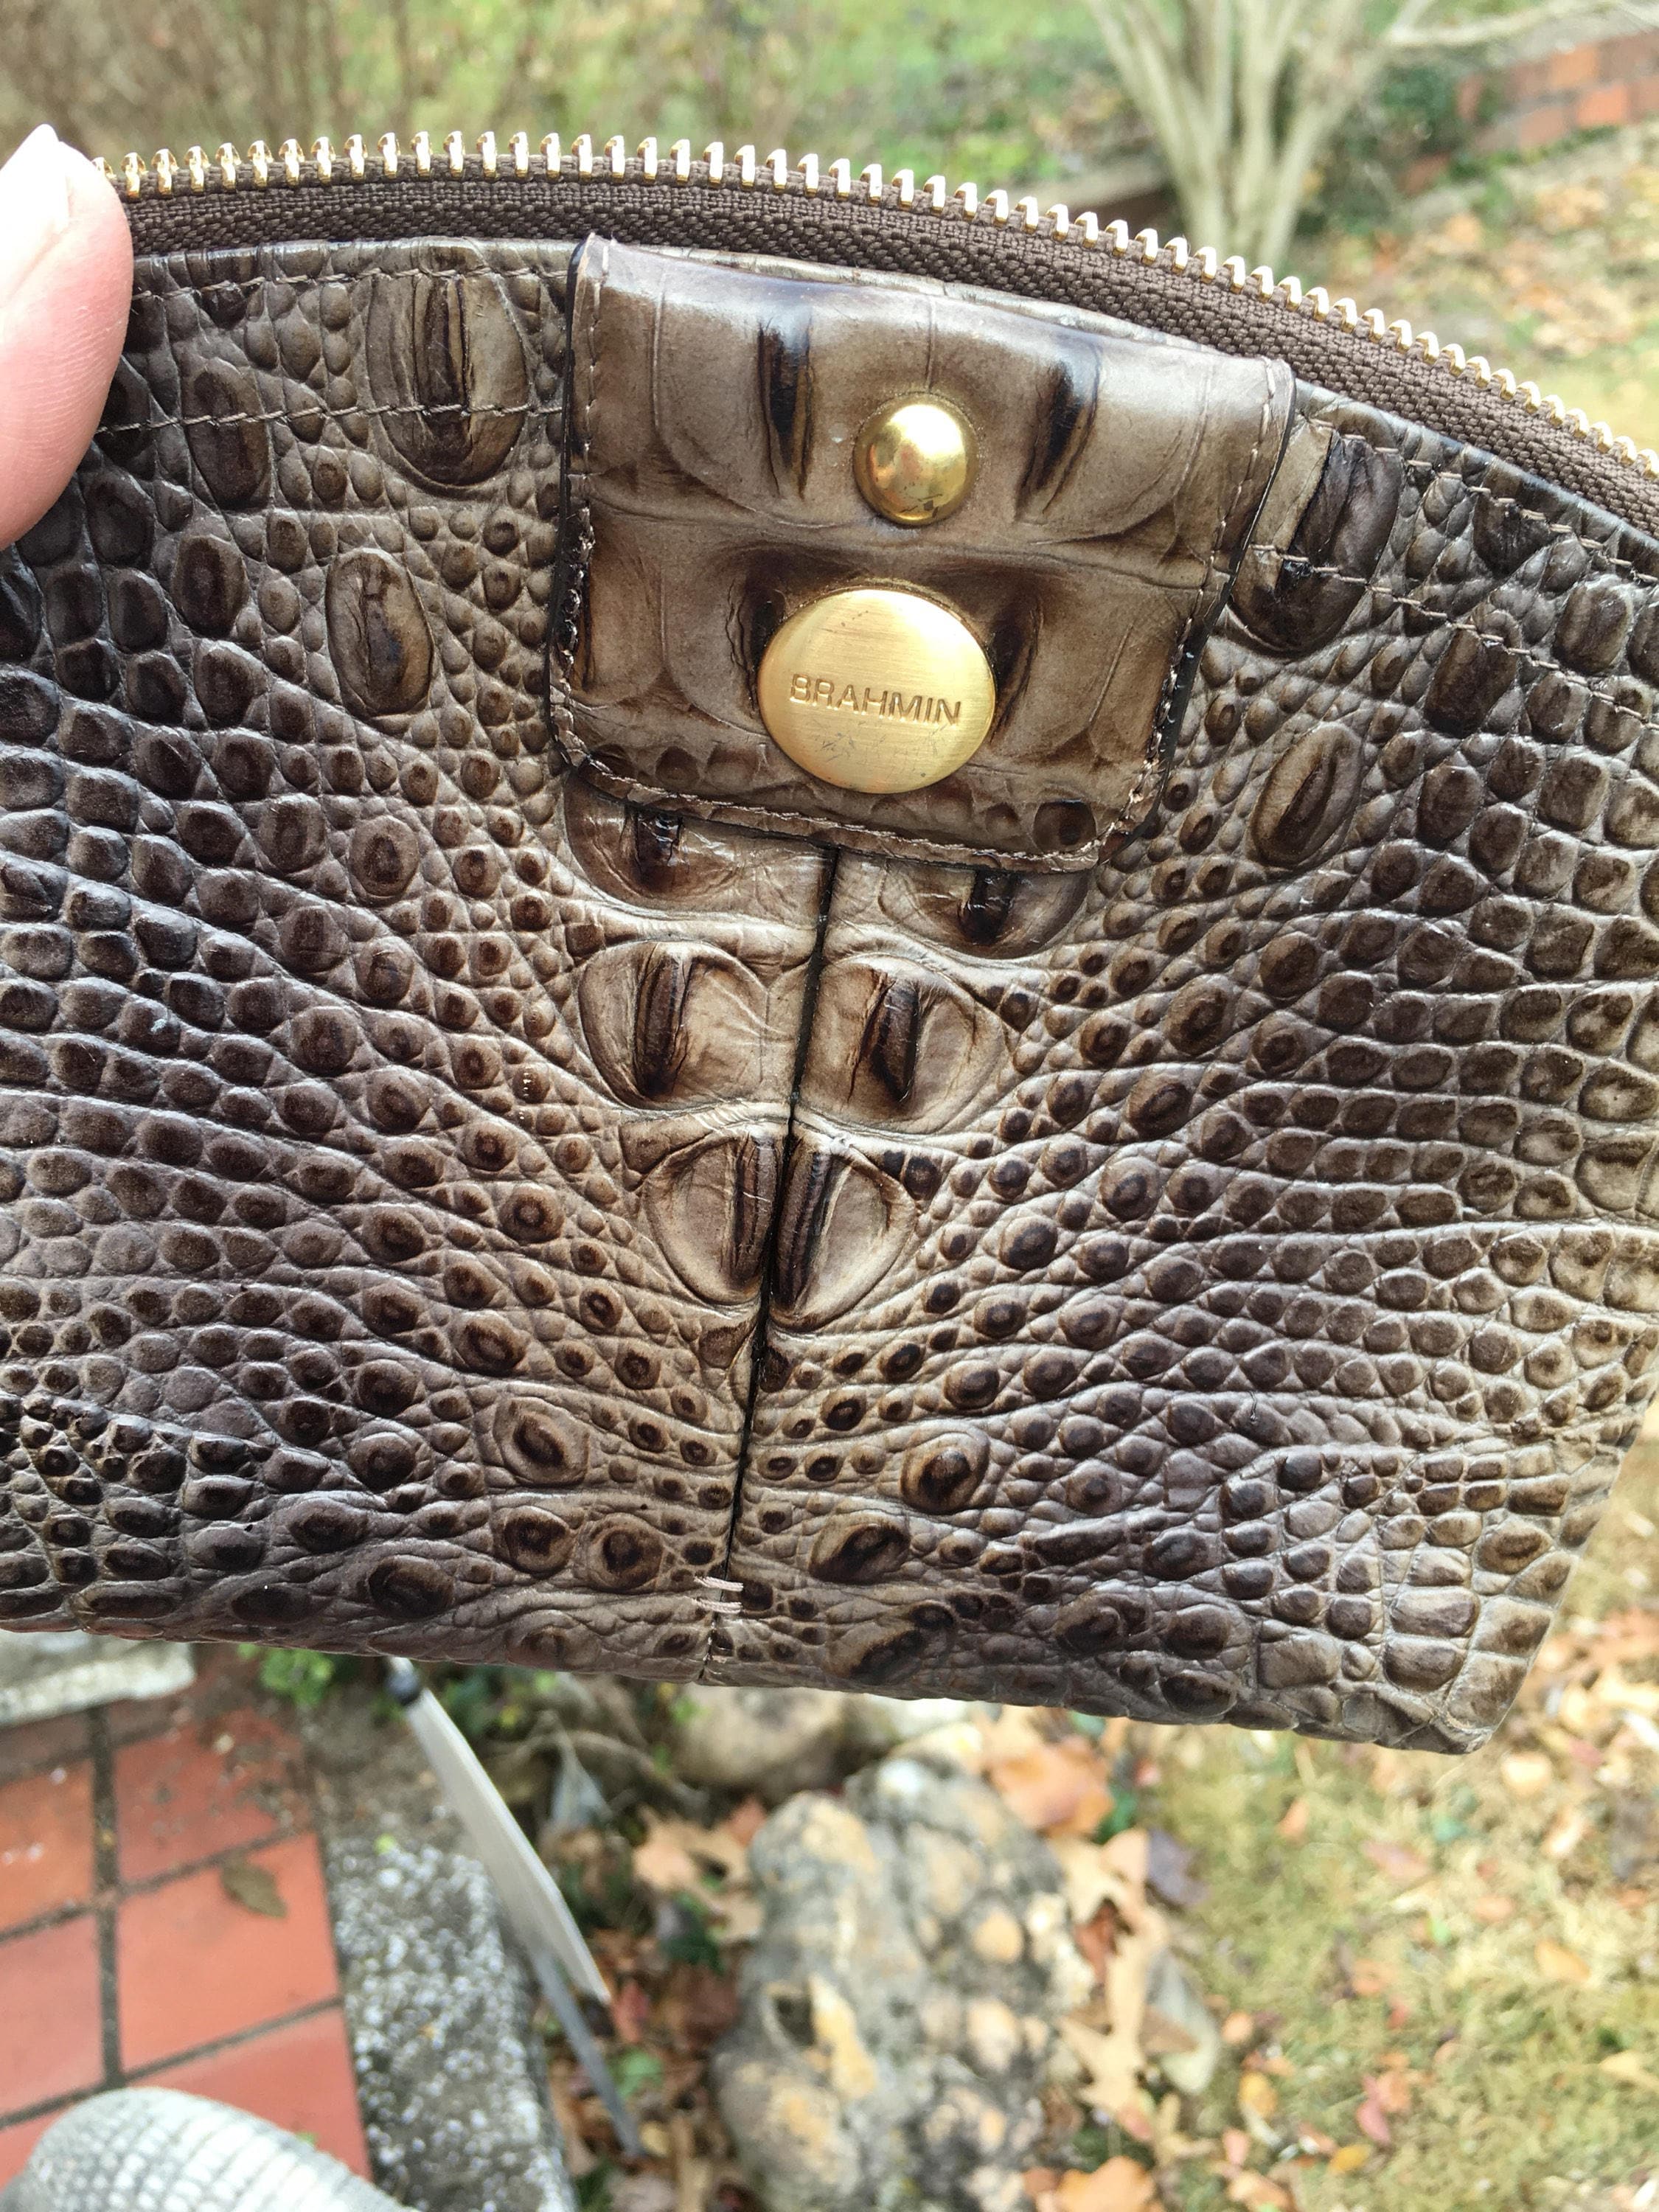 Brahmin Alligator Purse/Bag leather Bag | eBay